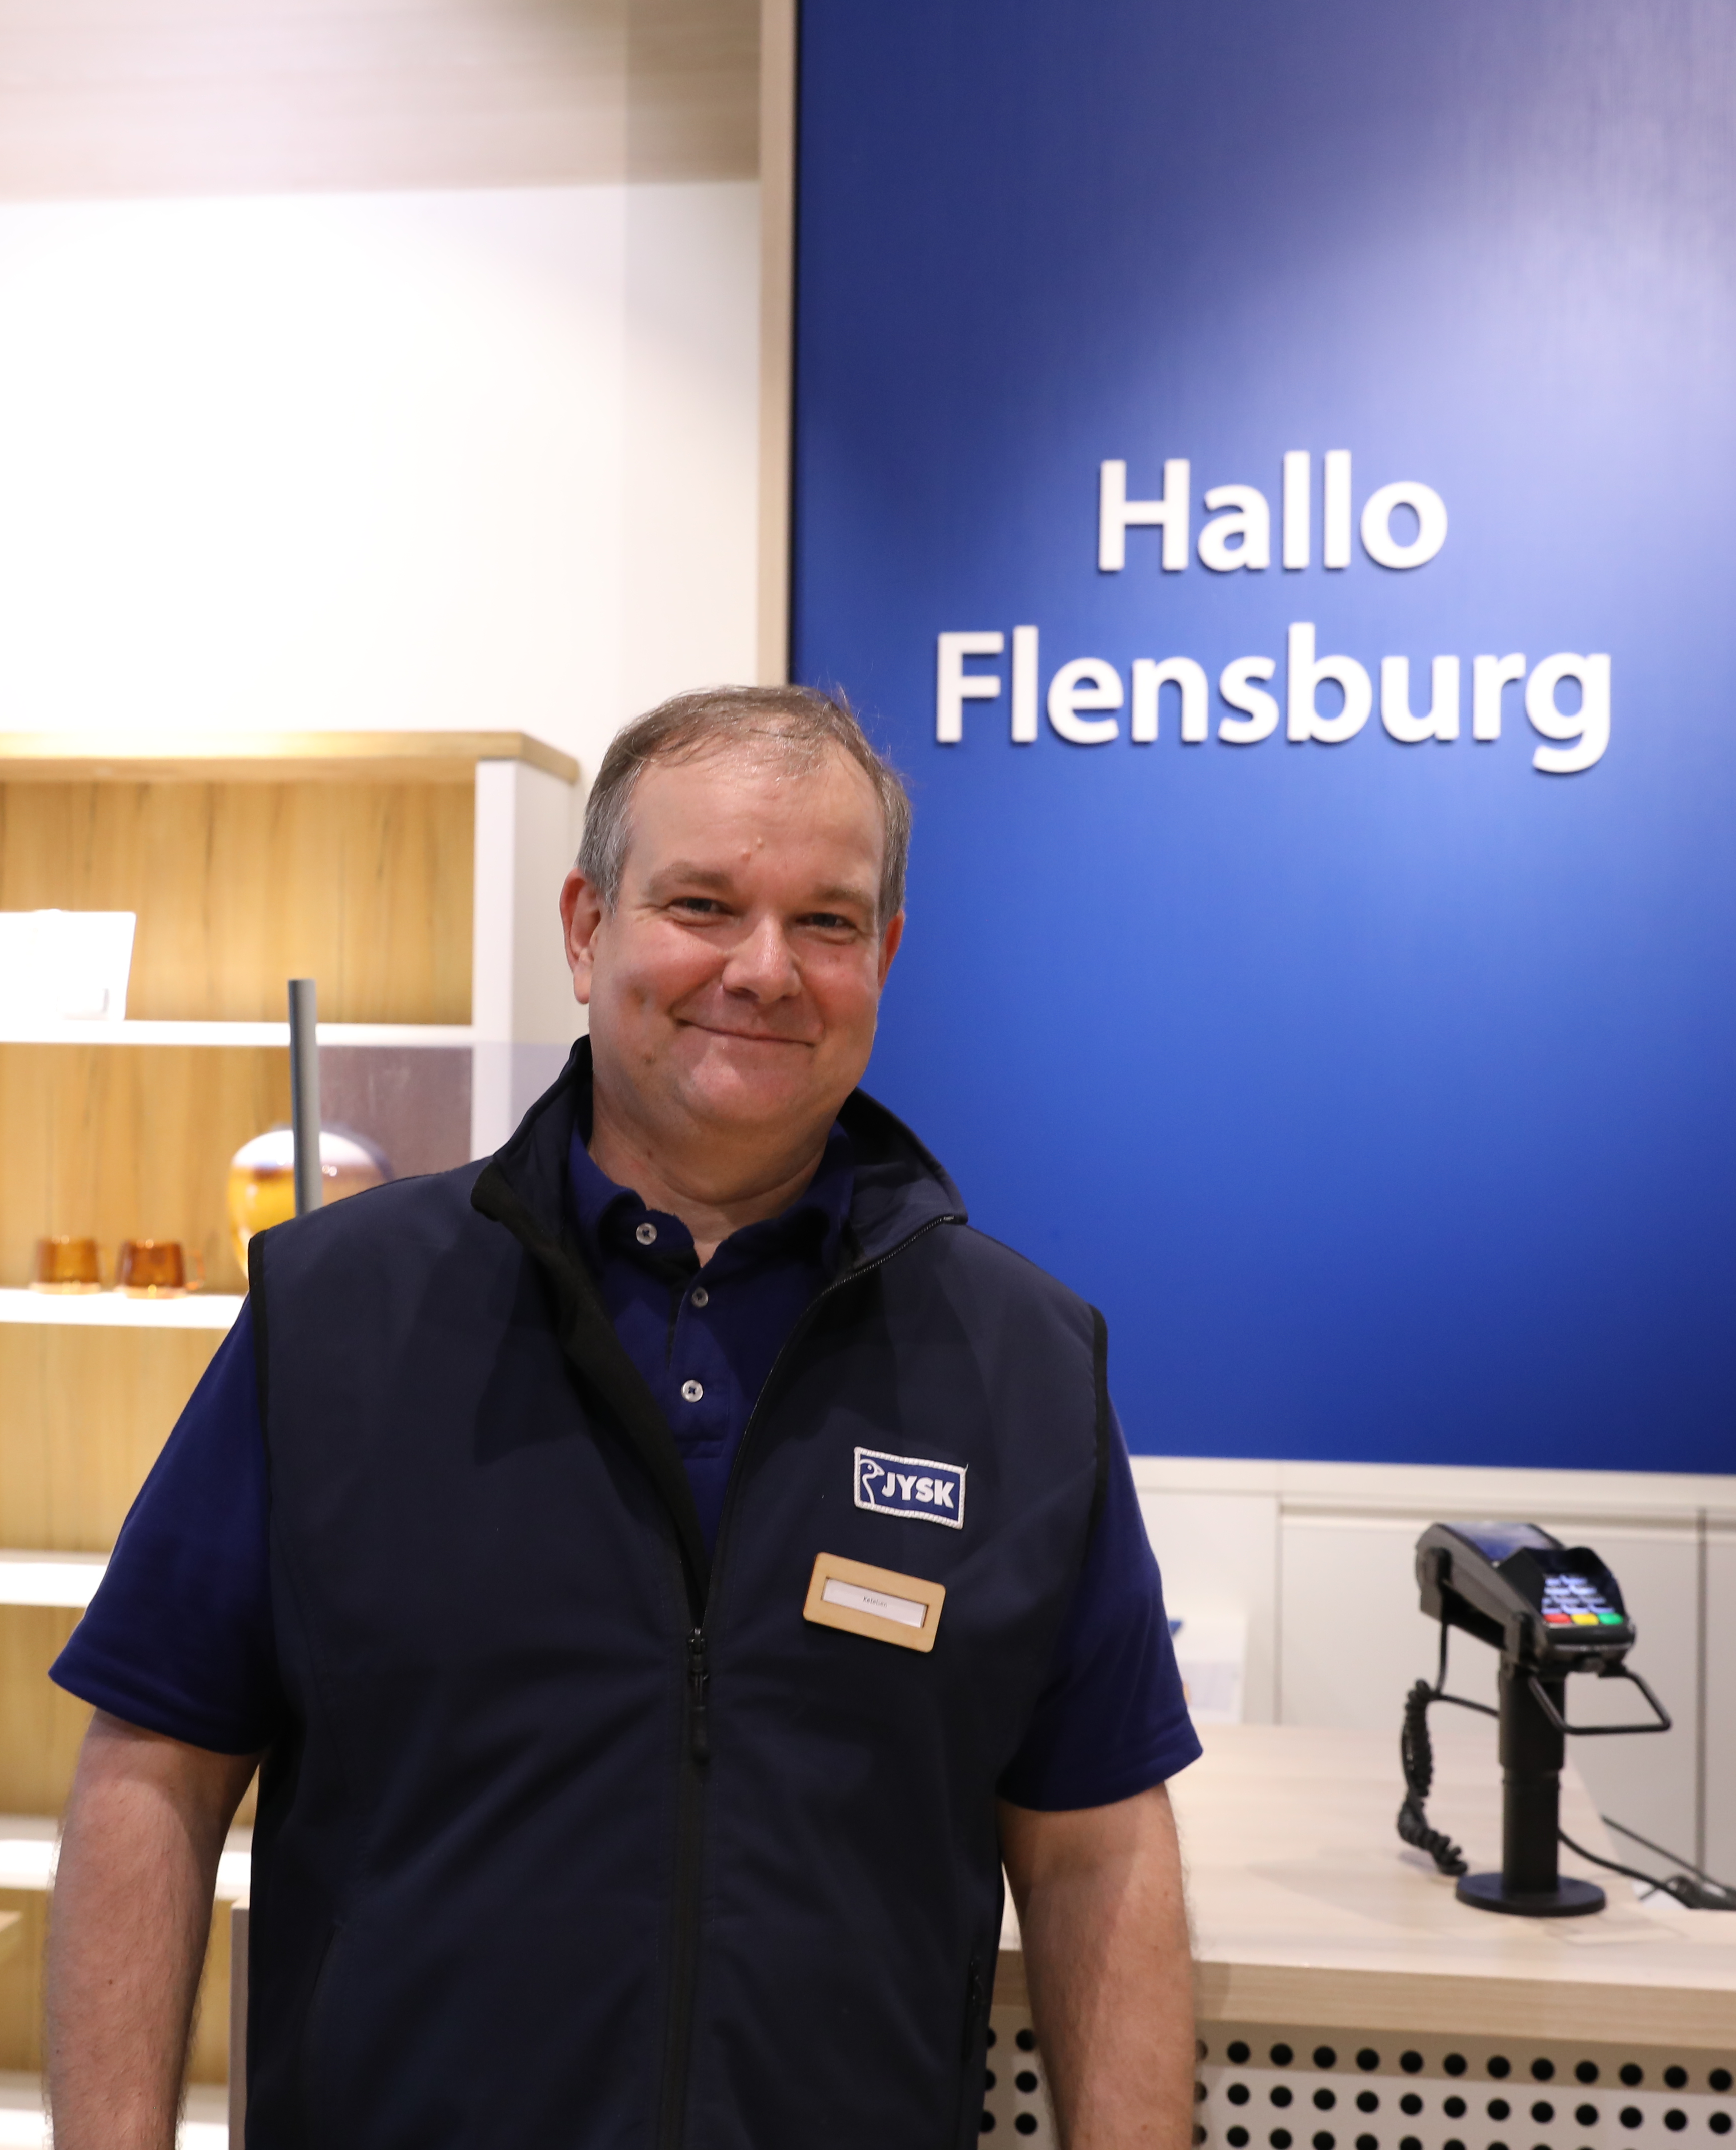 Ein Mann steht vor einem Kassentresen. Im Hintergrund sind die Worte "Hallo Flensburg" zu lesen 